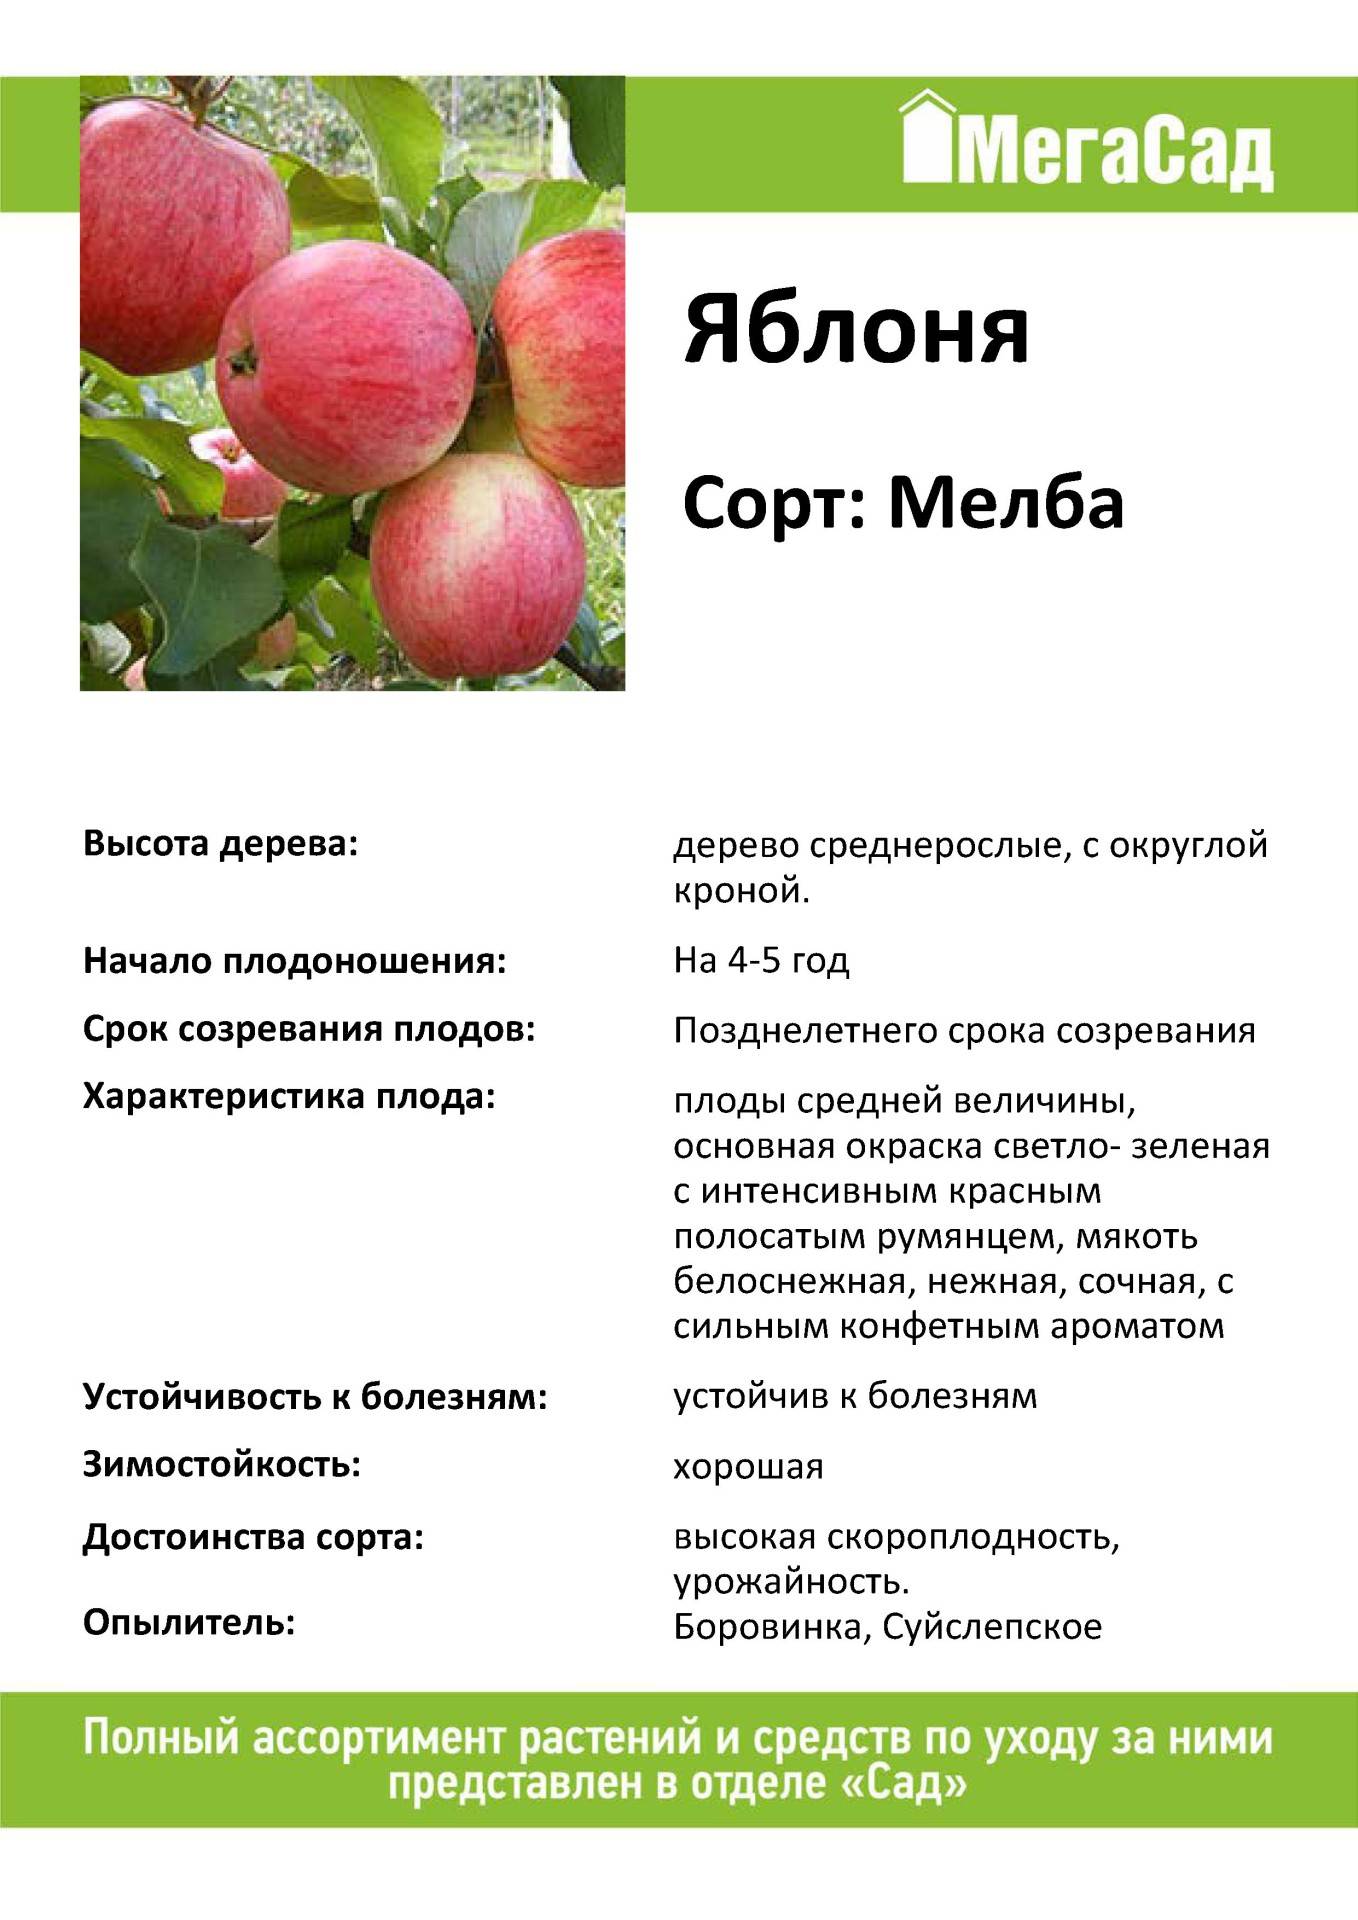 ✅ о яблоне коробовка: описание сорта, характеристики, агротехника, выращивание